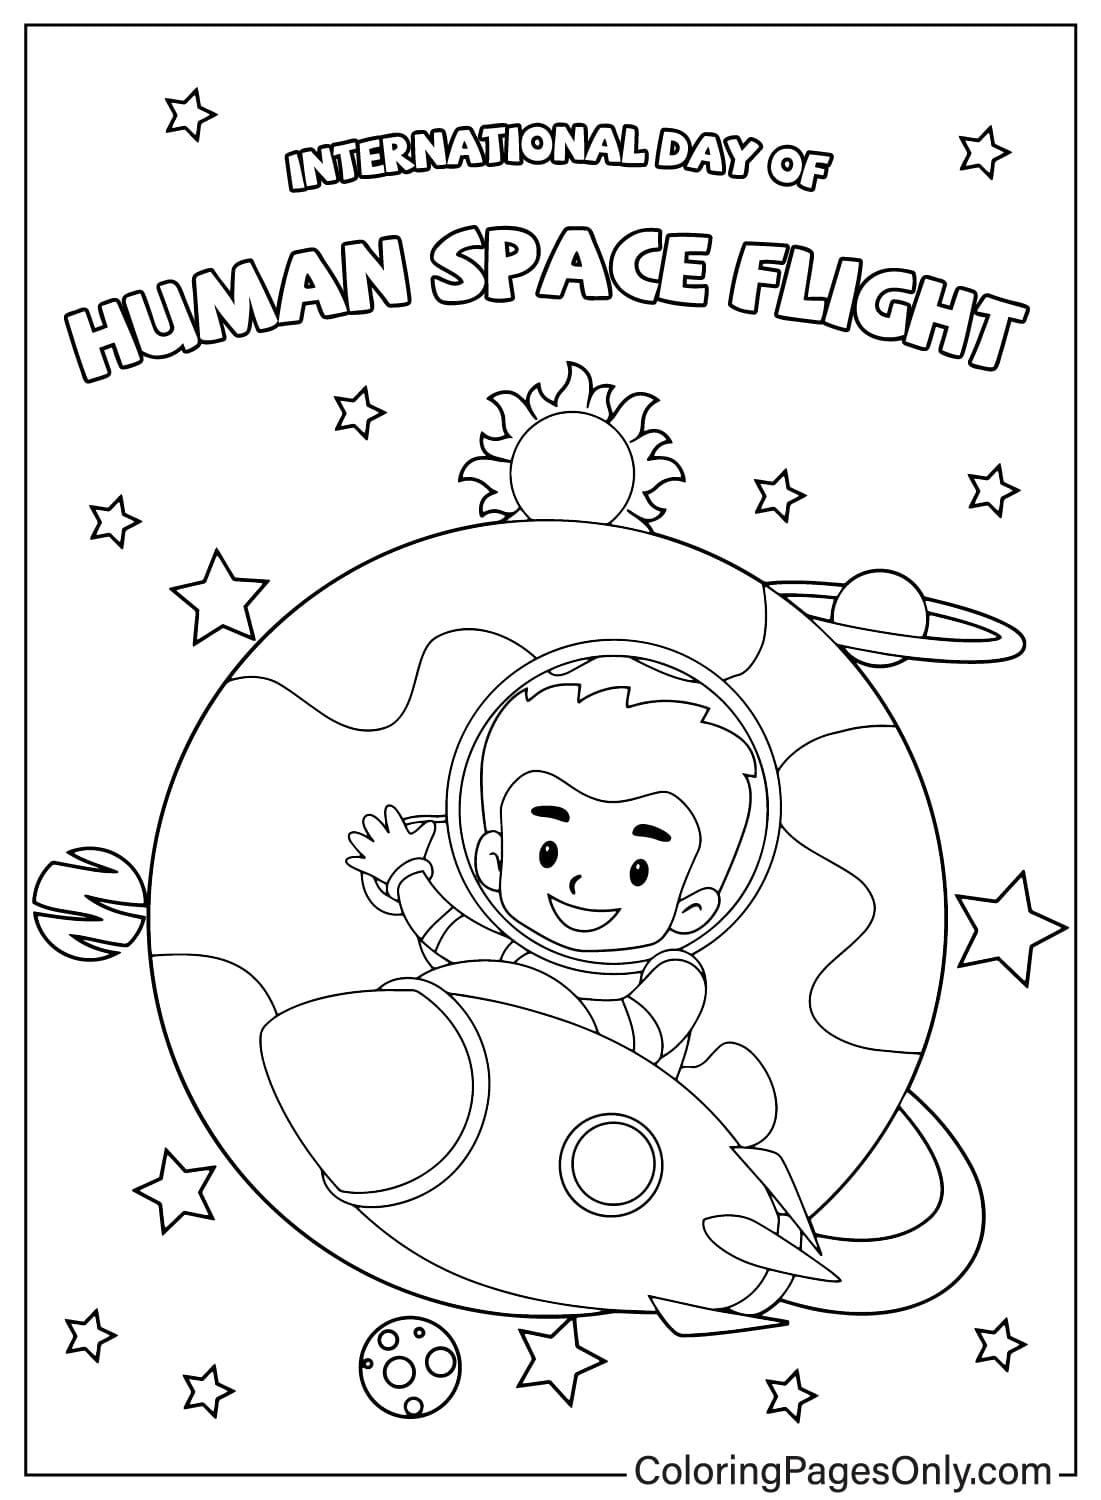 صور اليوم الدولي لرحلة الإنسان إلى الفضاء صفحة التلوين من اليوم الدولي لرحلة الإنسان إلى الفضاء